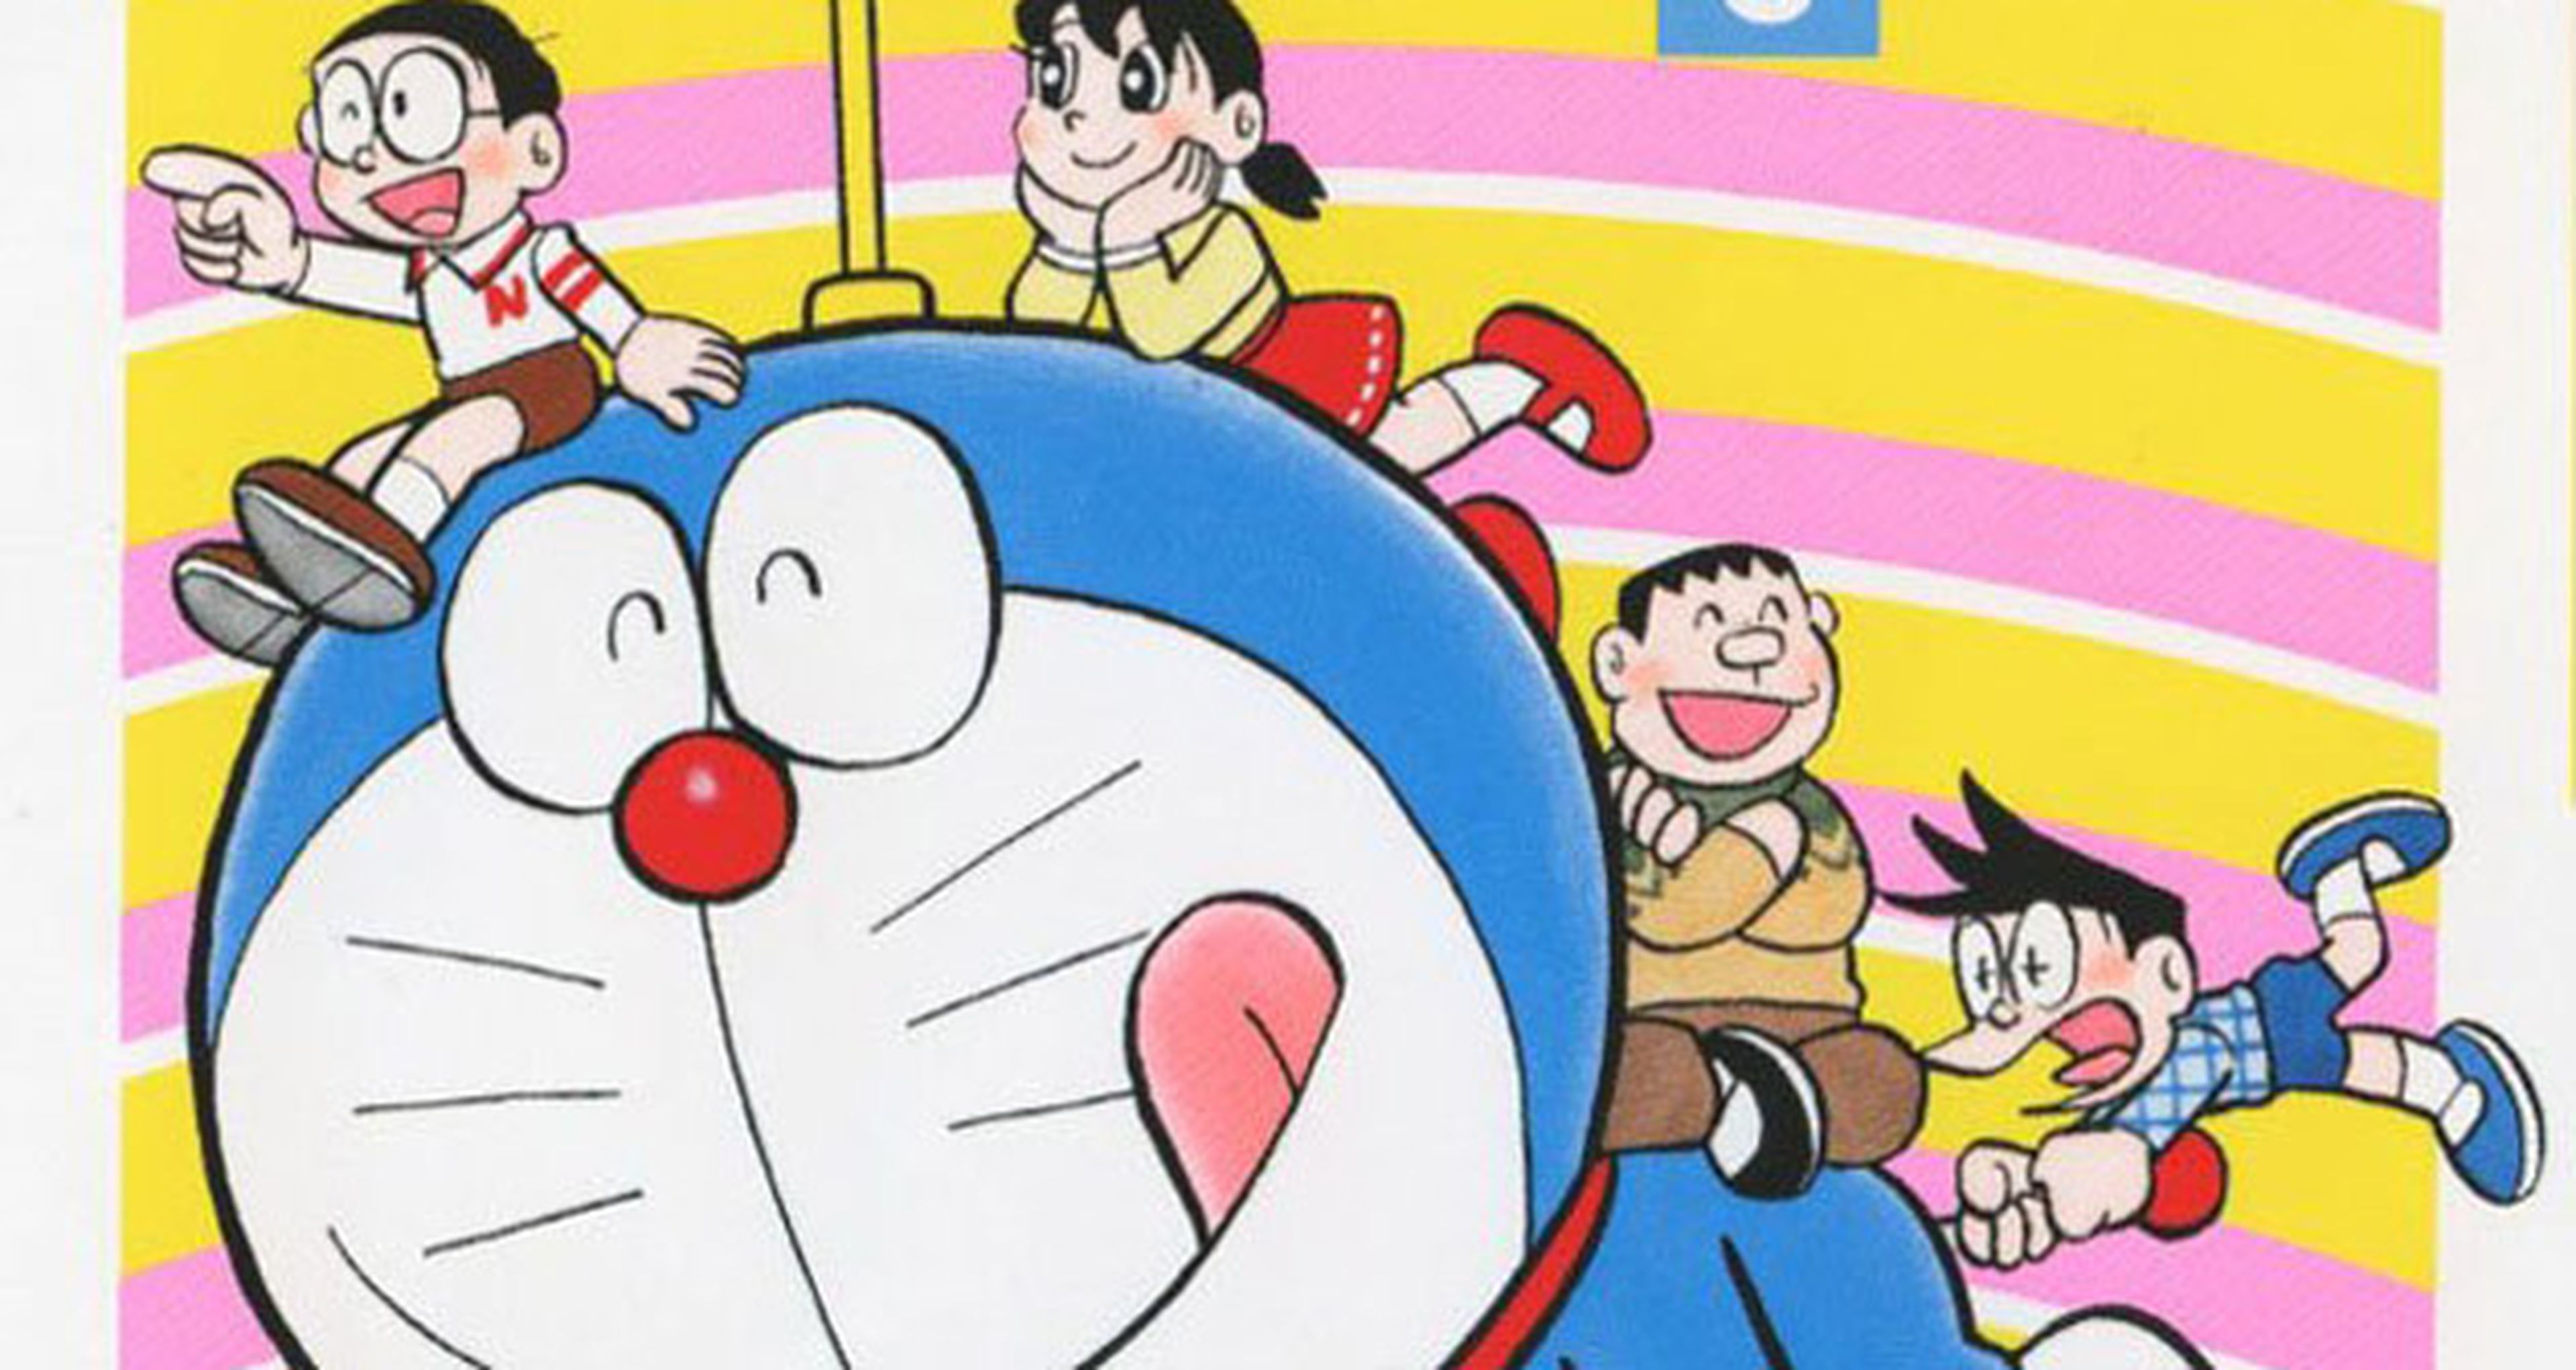 Nuevo tomo de Doraemon tras 8 años de sequía